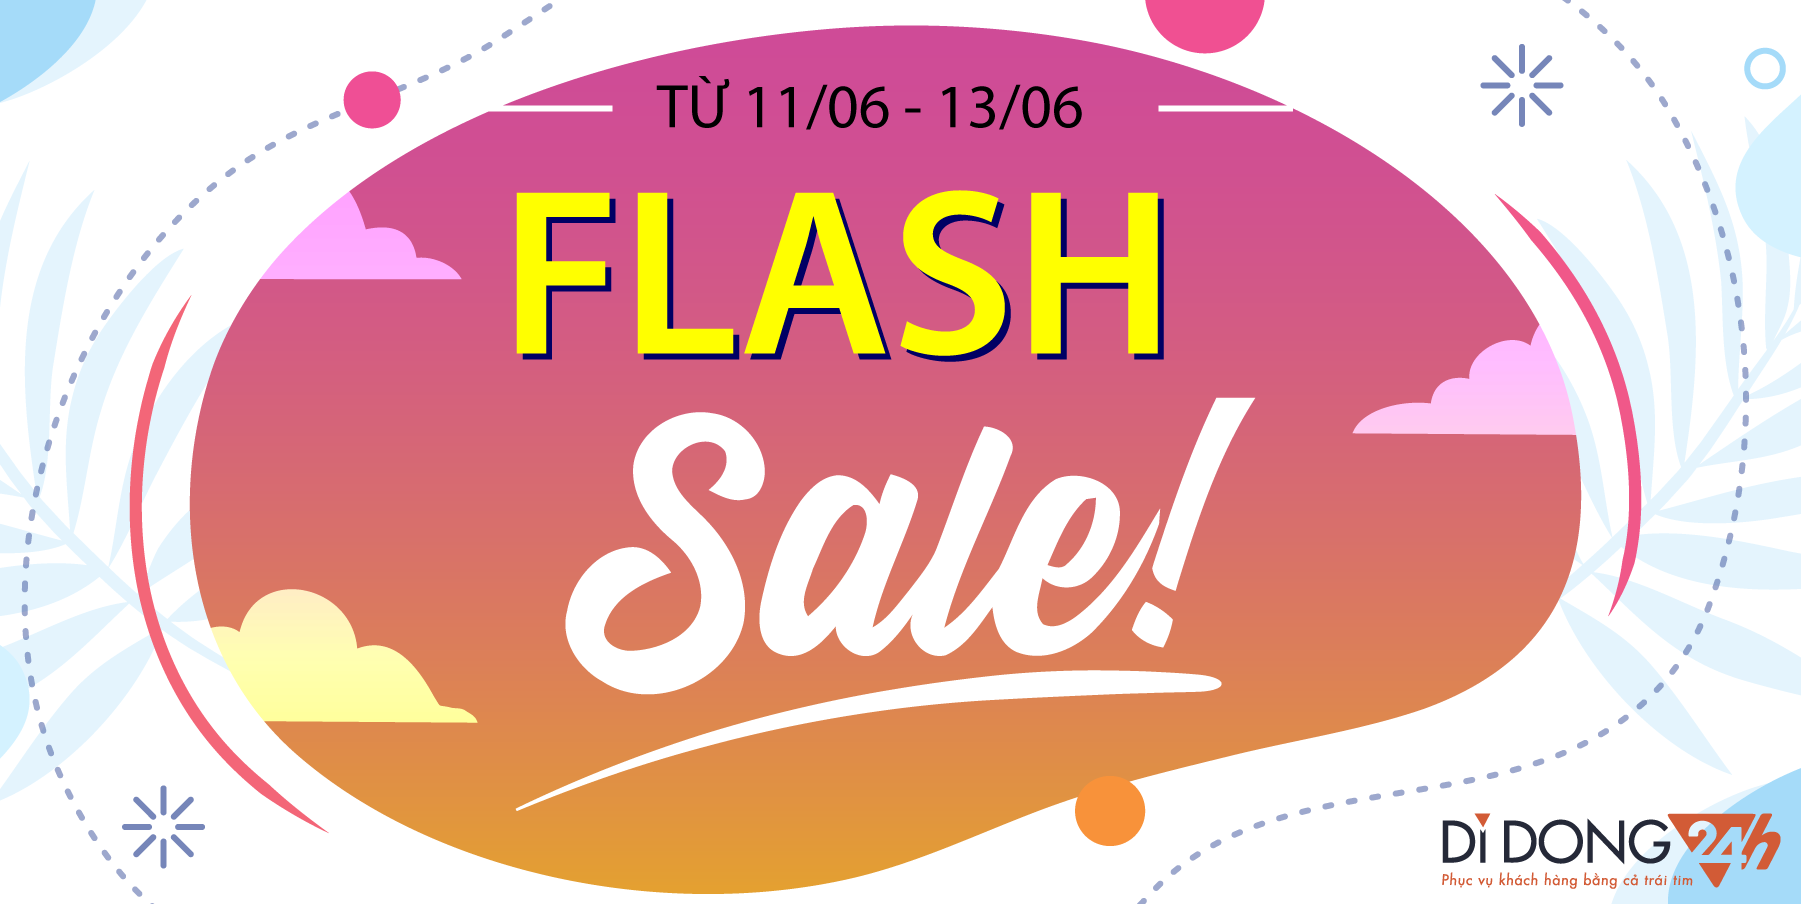 Event Flash Sale: Giảm giá Samsung và iPad siêu Shock tại Di Động V24h